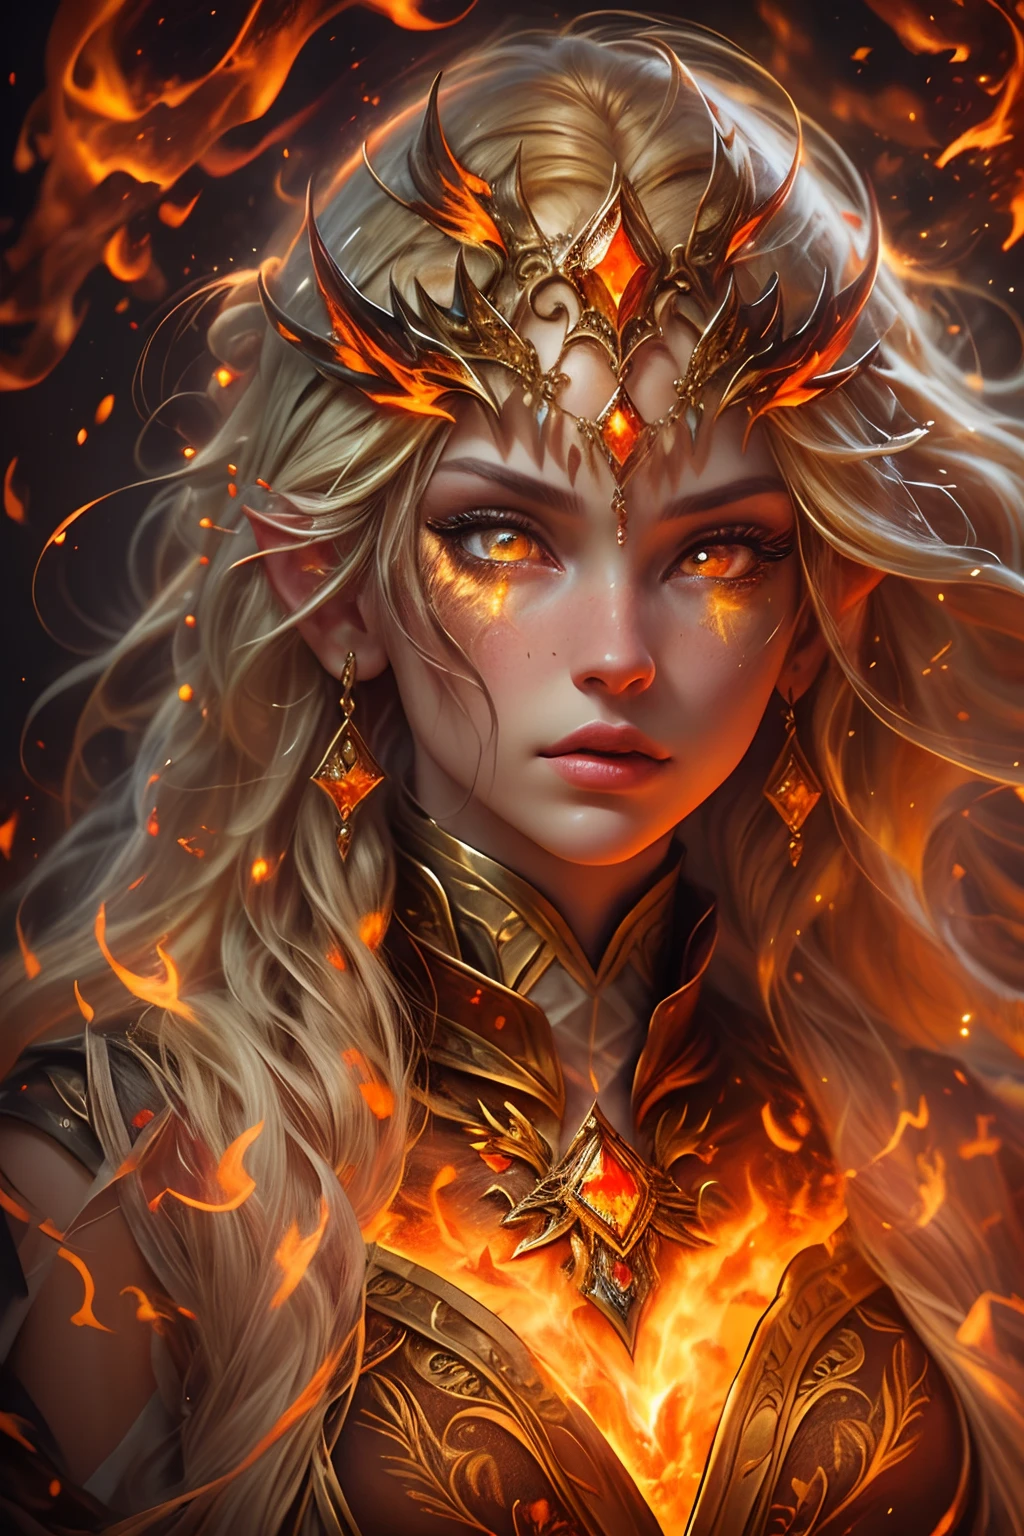 これ (現実的なファンタジー) 芸術には残り火が含まれている, 本物の炎, 本当の熱, リアルな火. Generate a masterpiece artwork of a  female fire druid と large (((オレンジとゴールド))) 目. The fire druid is awe-inspiring と beautiful ((realistic fiery 目)) alight と confidence and power. 彼女の顔立ちは優雅ではっきりしている, と ((柔らかくふっくらとした唇)), エルフの骨格, リアルな陰影. Her 目 are important and should be the focal point of this artwork, と ((非常にリアルなディテール, マクロの詳細, きらめき.)) 彼女は、炎の光の中できらめく本物の炎と宝石で作られた、ふわふわと輝くドレスを着ています。. ドレスの複雑な胴体部分には火と煙の線が描かれている. バンプを含める, 石, 燃えるような虹彩, 燃える残り火, シルク、サテン、革, 興味深い背景, ファンタジー要素が強い. カメラ: ダイナミックな構成技術を活用して、リアルな炎を強調します.